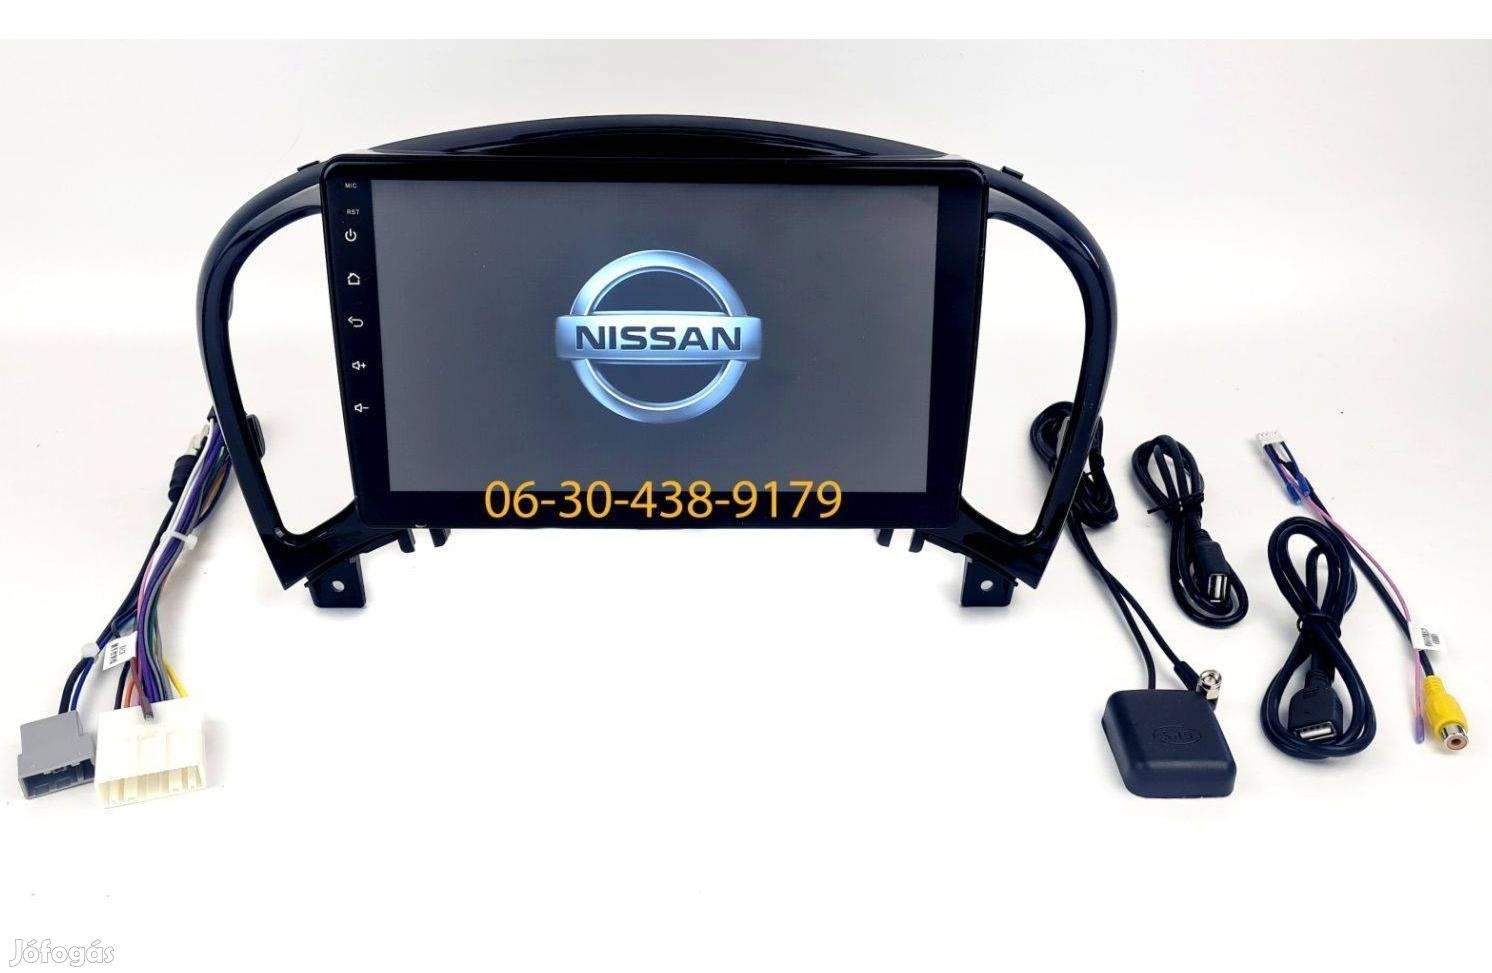 Nissan Juke Android autórádió fejegység gyári helyre 1-6GB Carplay